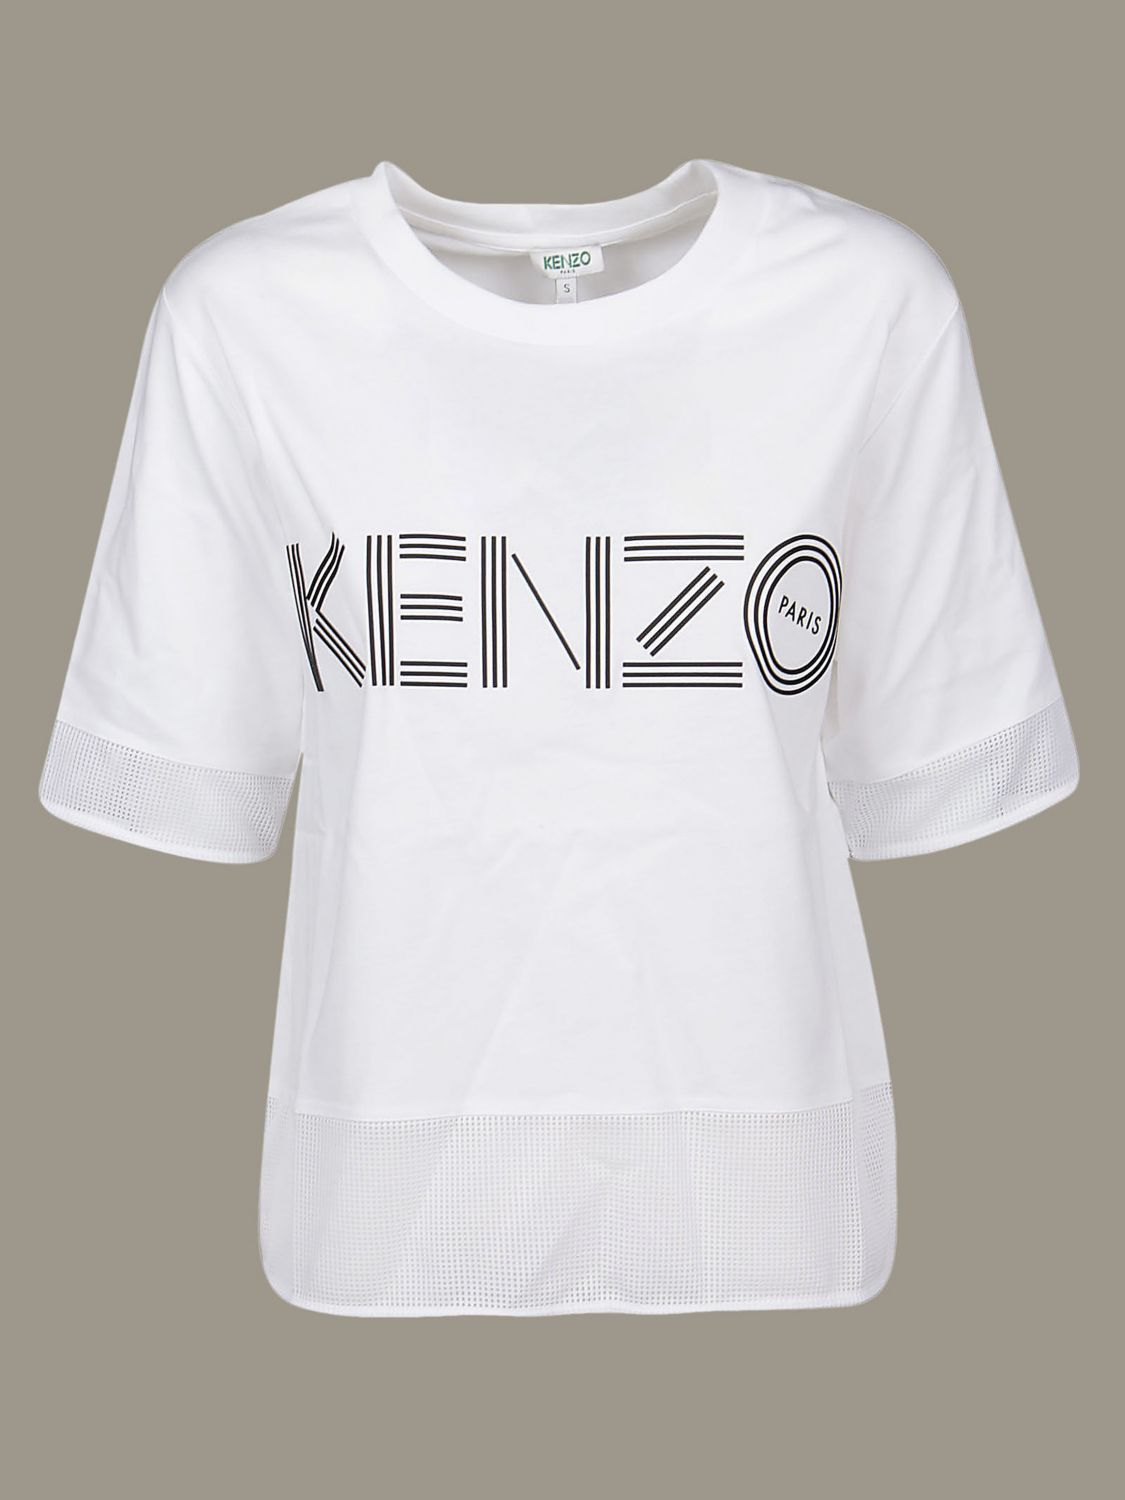 cheap kenzo t shirt women's Cheaper 